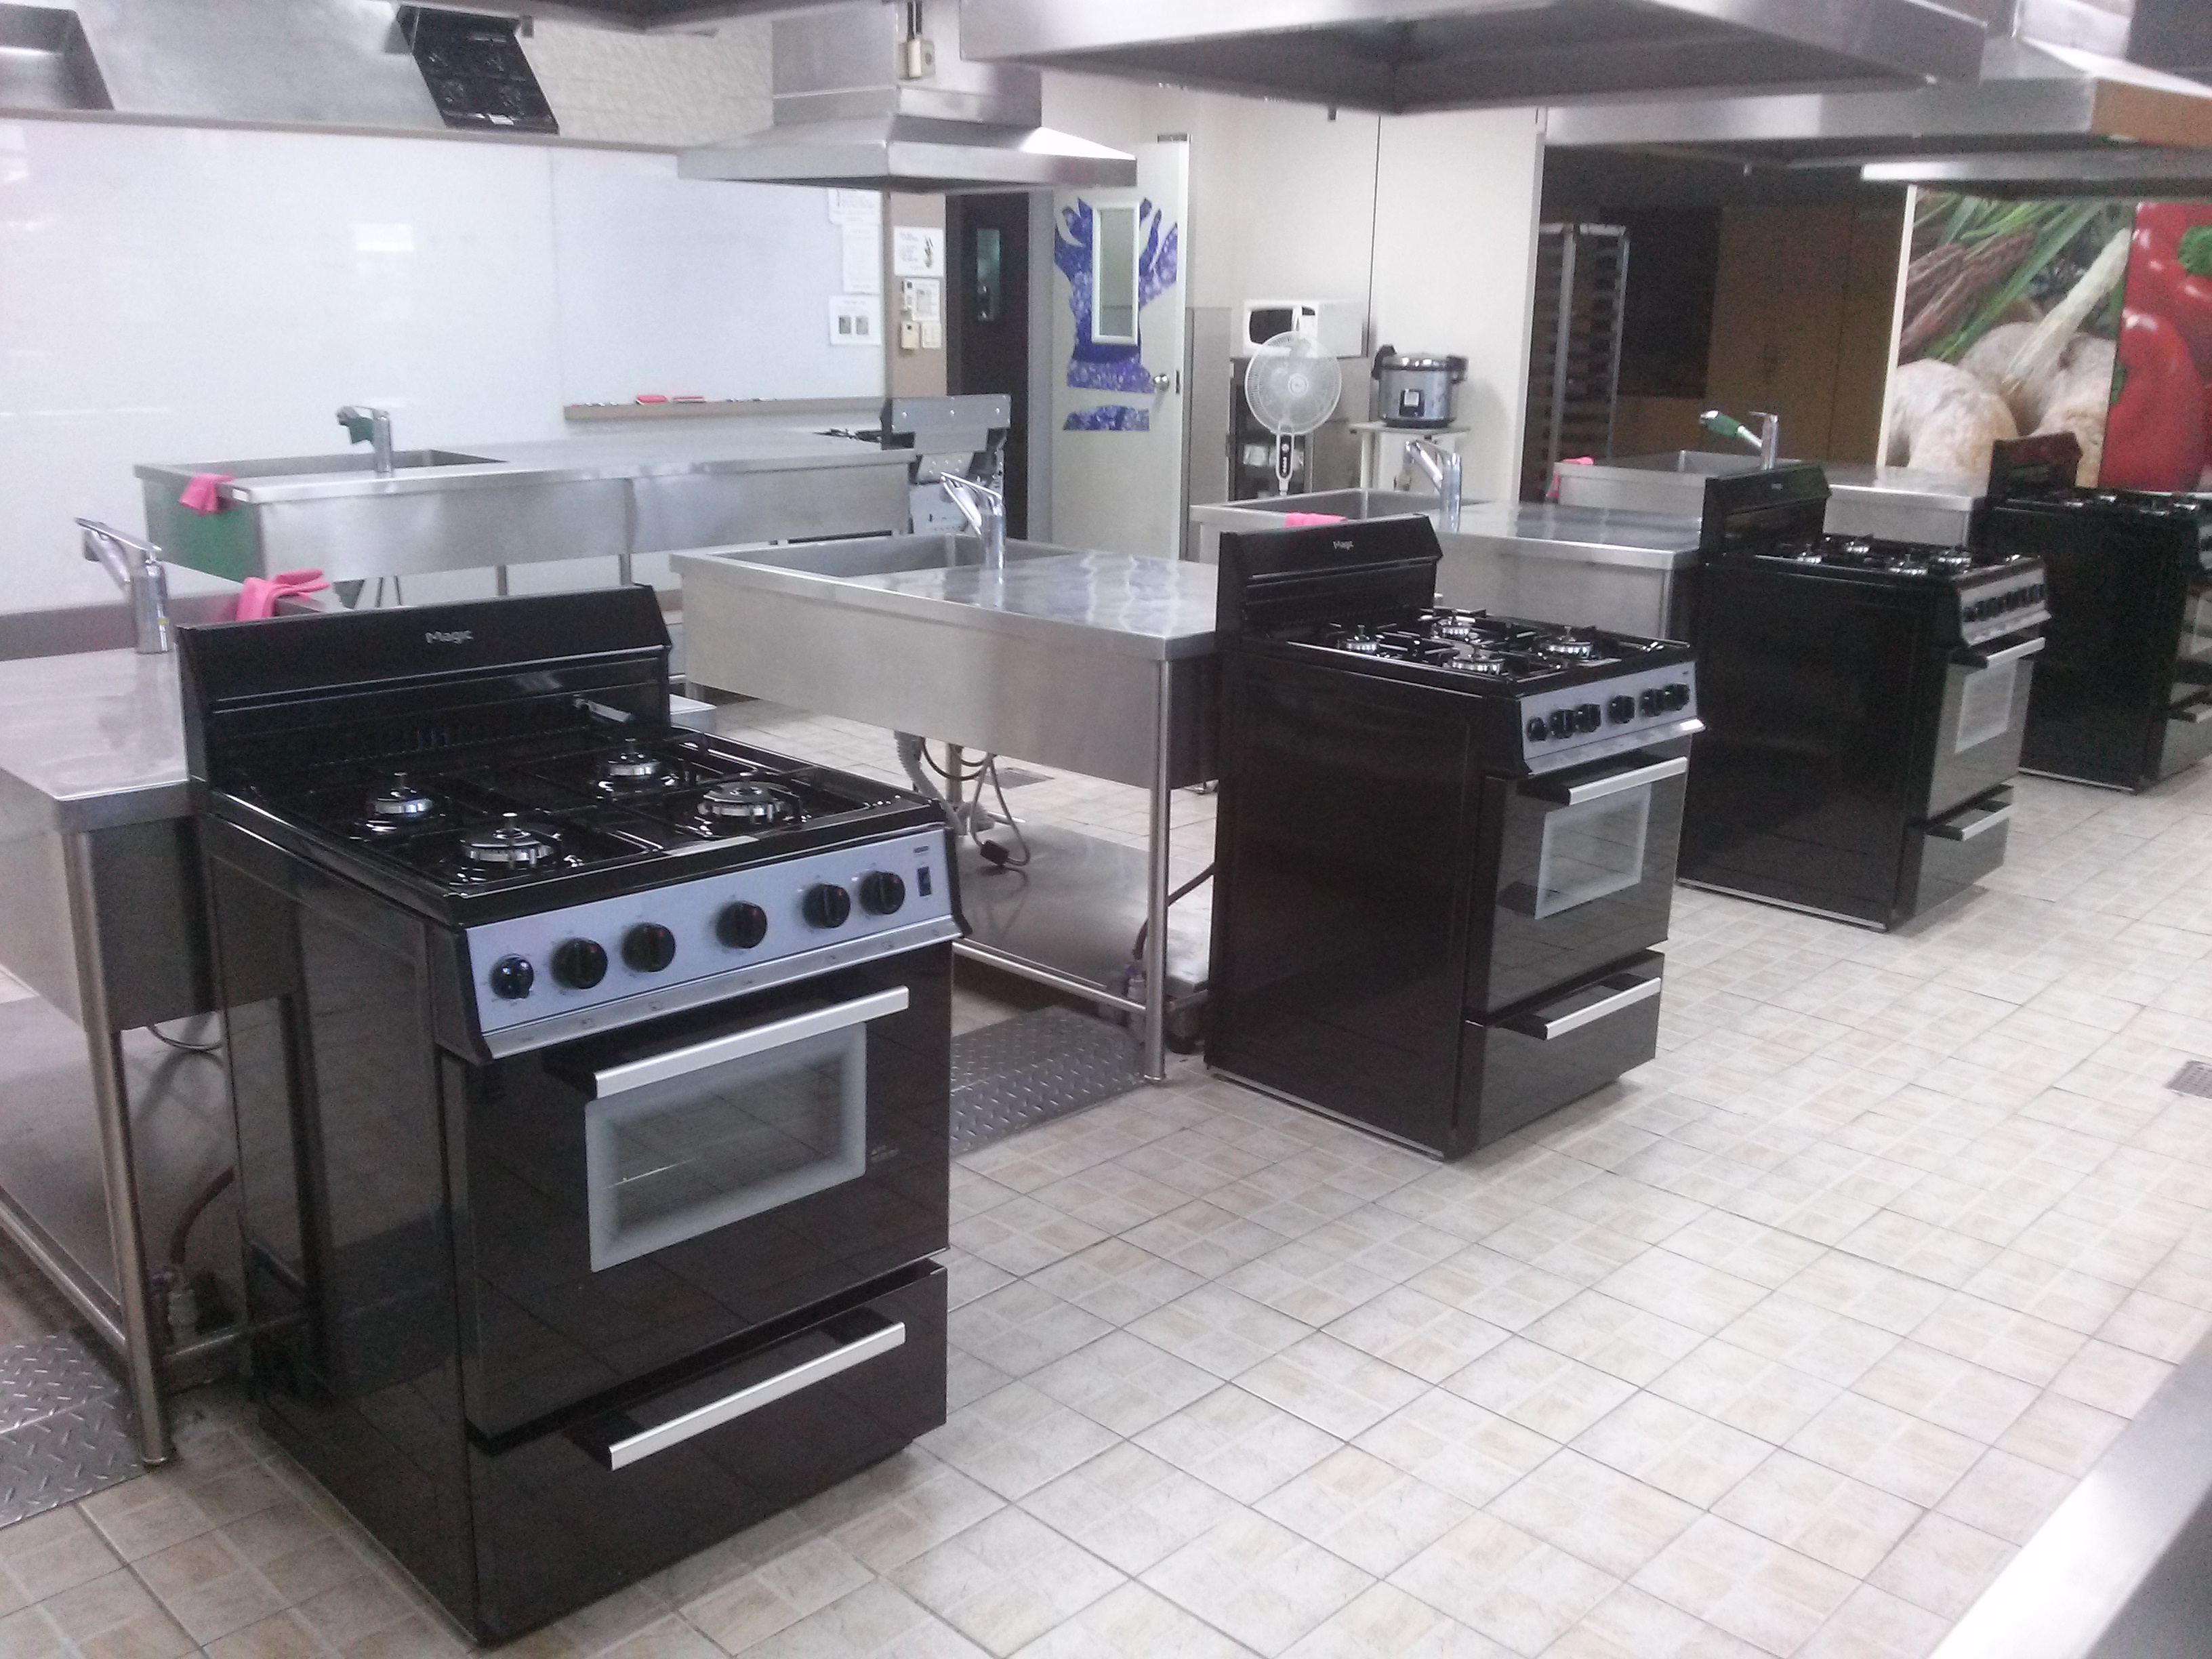 요리교실 새단장 : 안전하고 쾌적한 요리교실을 위한 가스오븐레인지 전면 교체!!썸네일